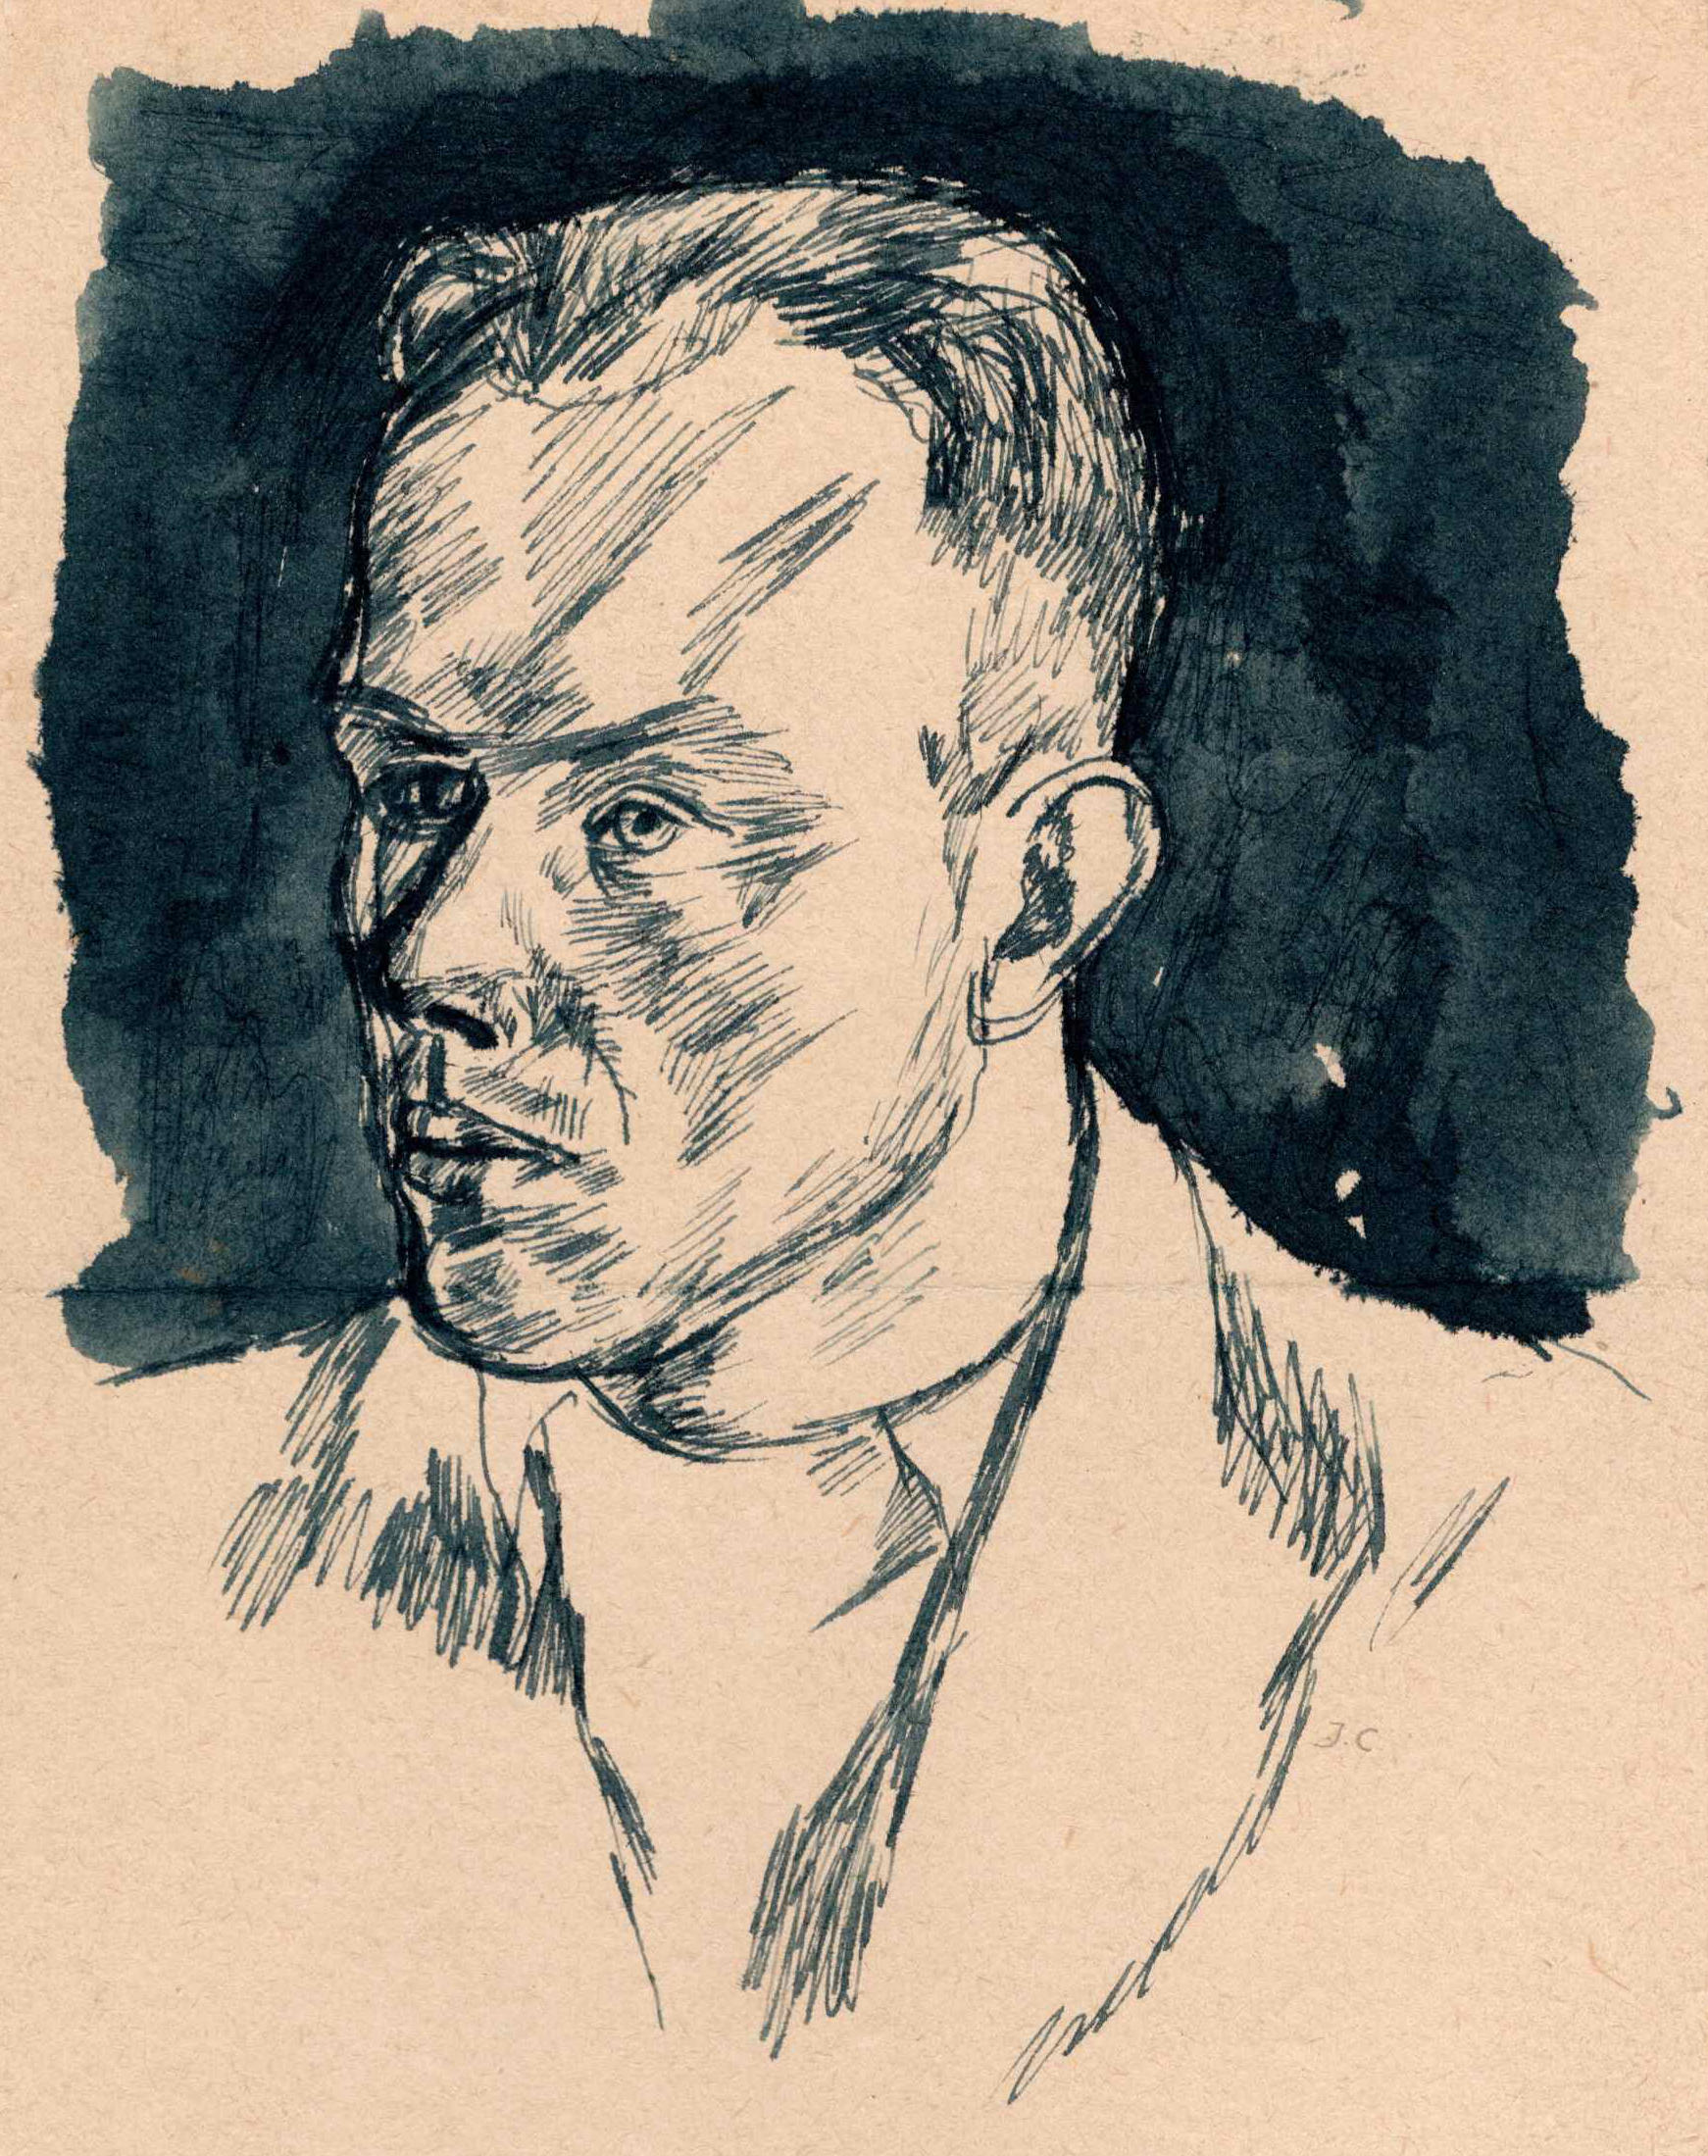 Portret przedstawiający Aleksandra Witliba podpiany jako portret nieudany. Józef Czapski, obóz w Griazowcu, 1941